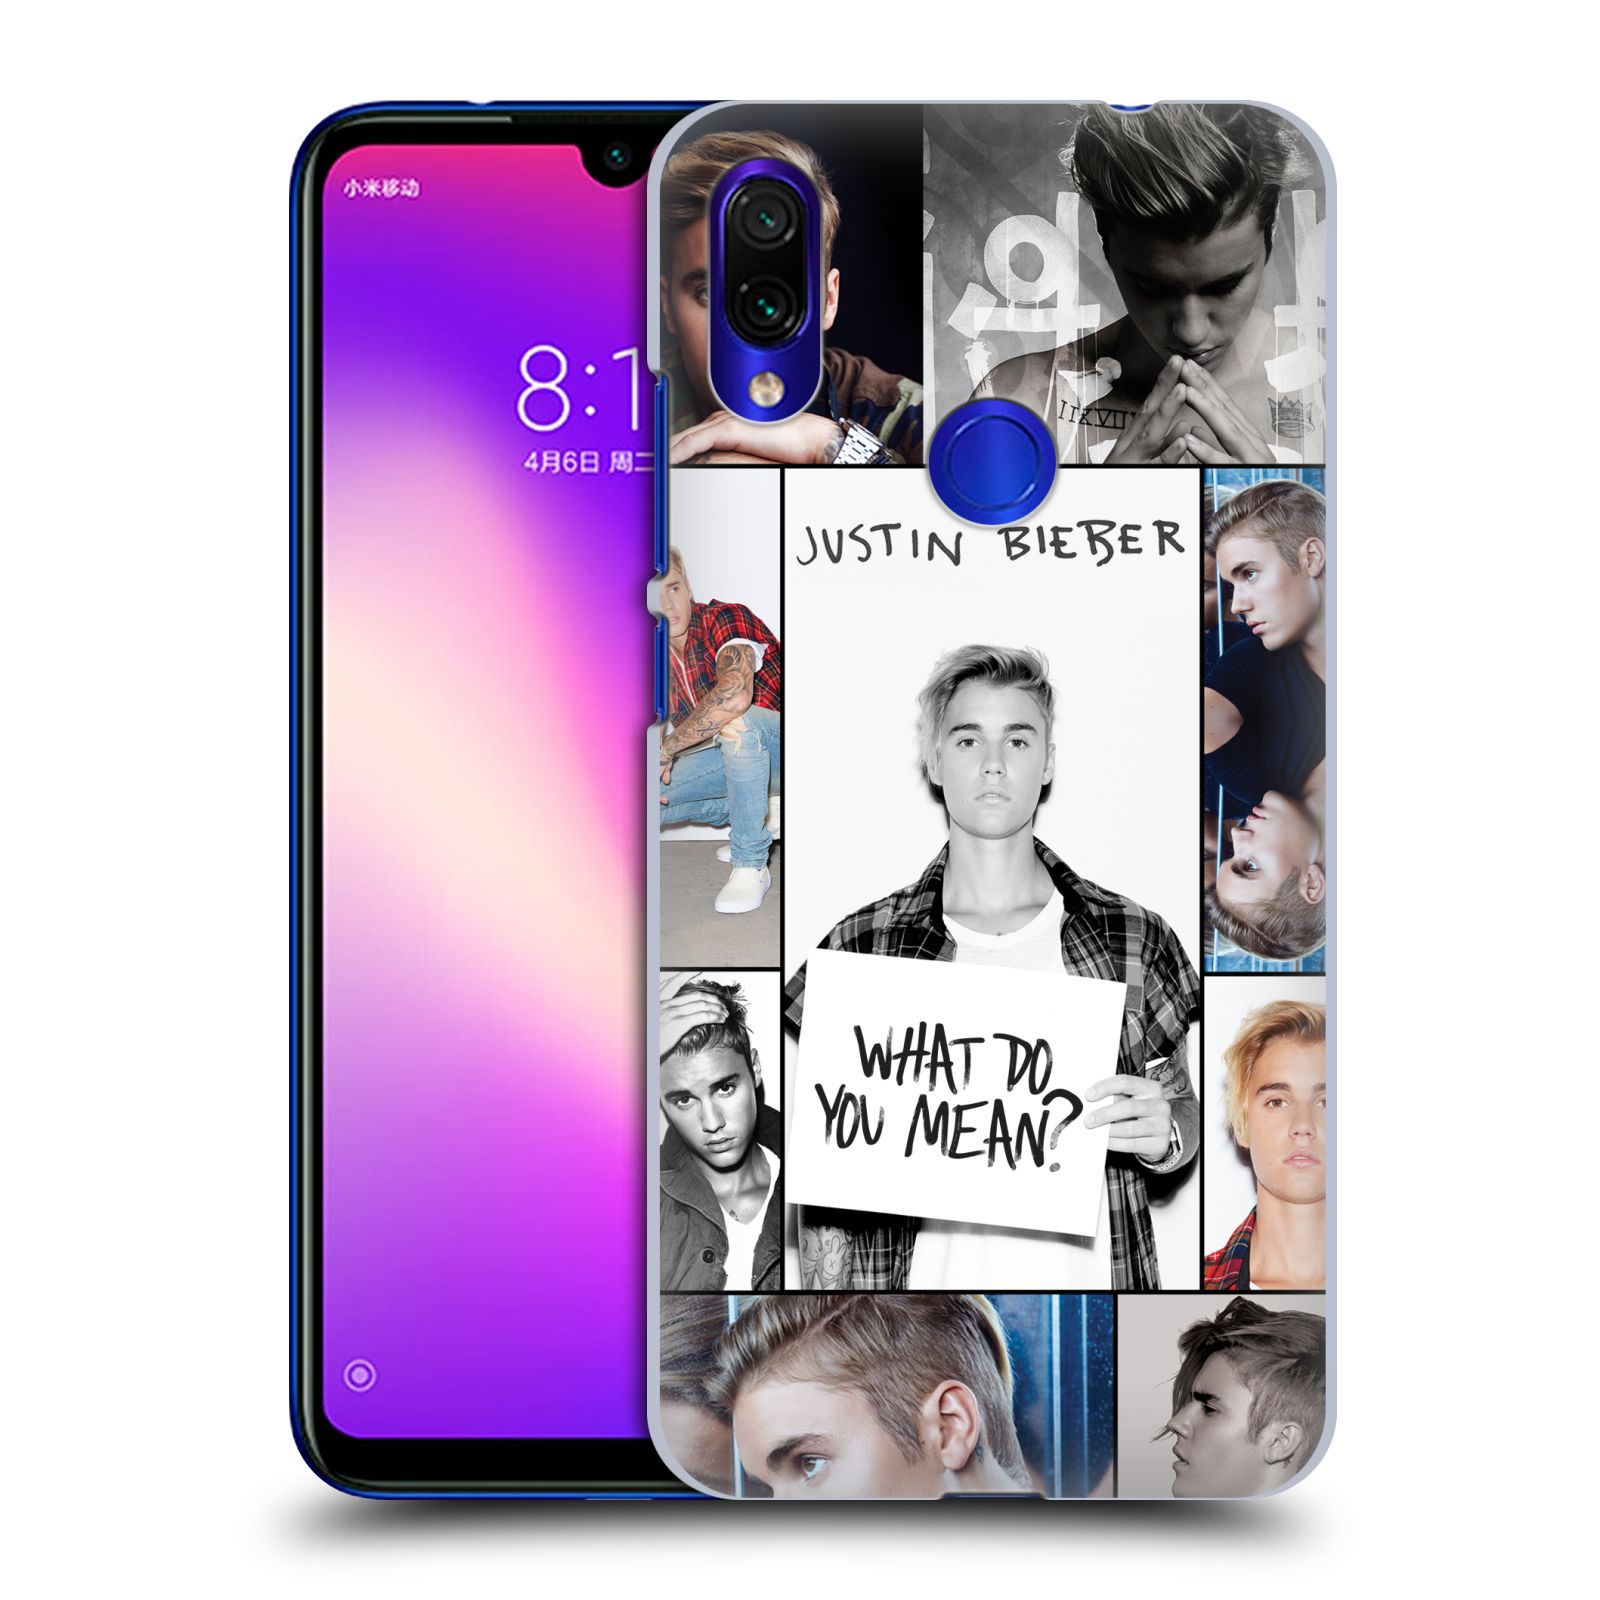 Pouzdro na mobil Xiaomi Redmi Note 7 - Head Case - Justin Bieber foto Purpose malé fotky